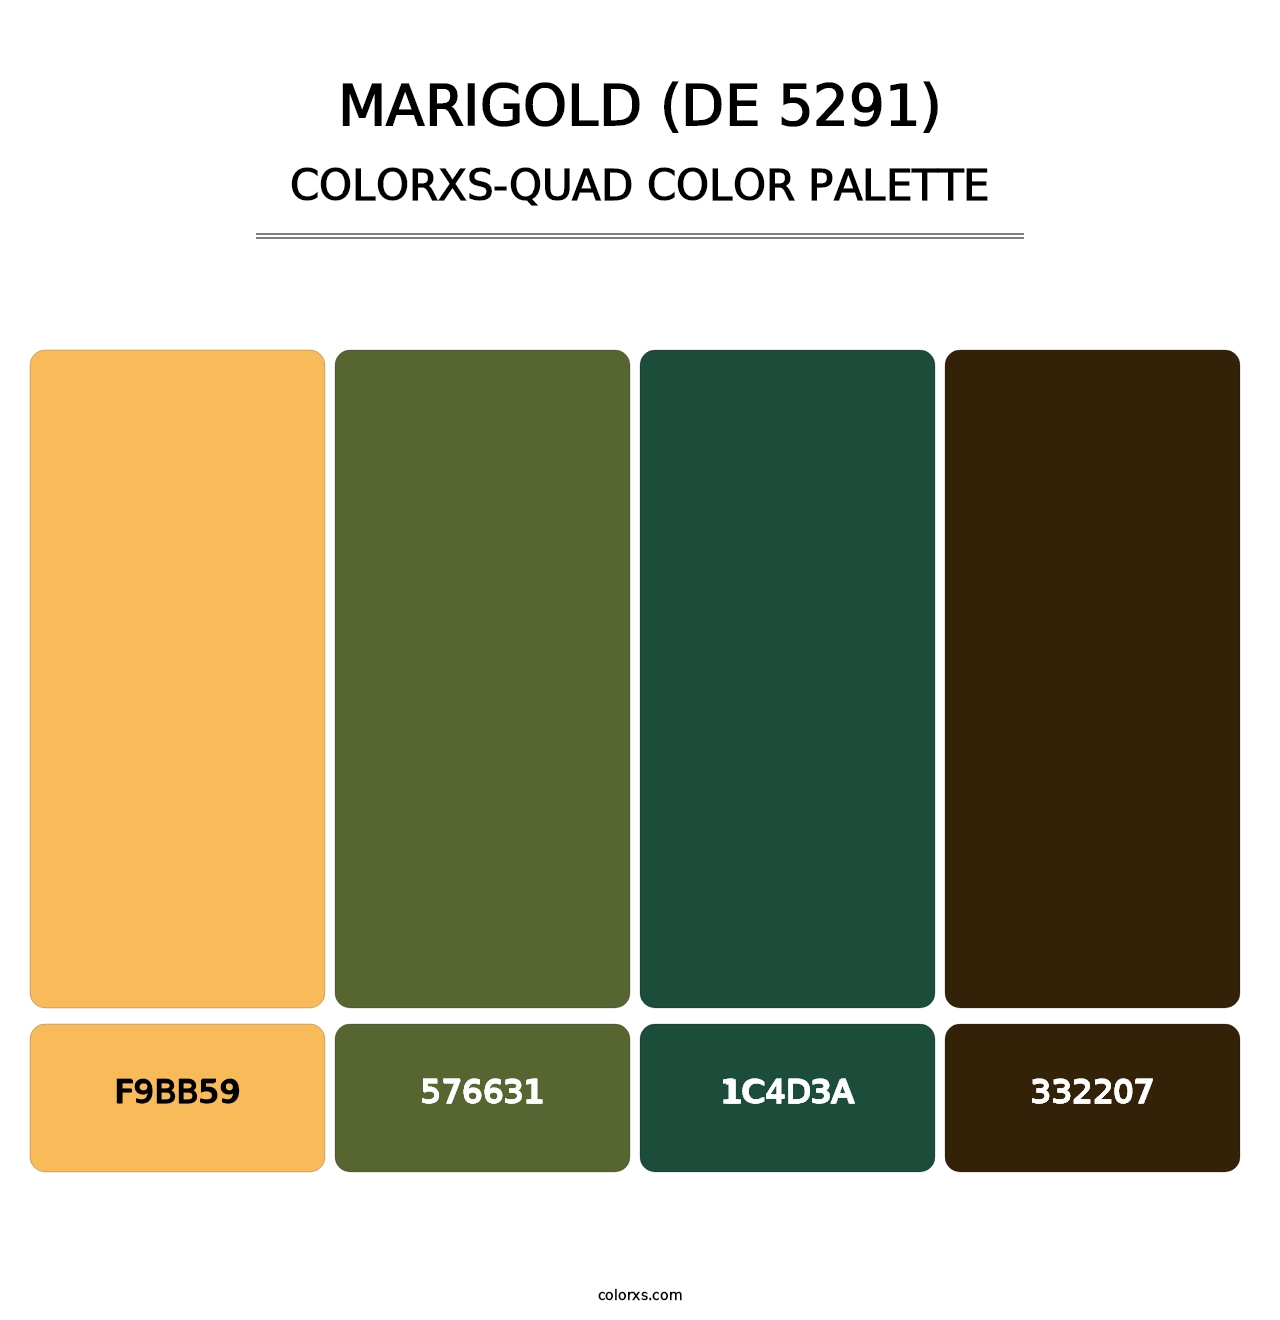 Marigold (DE 5291) - Colorxs Quad Palette